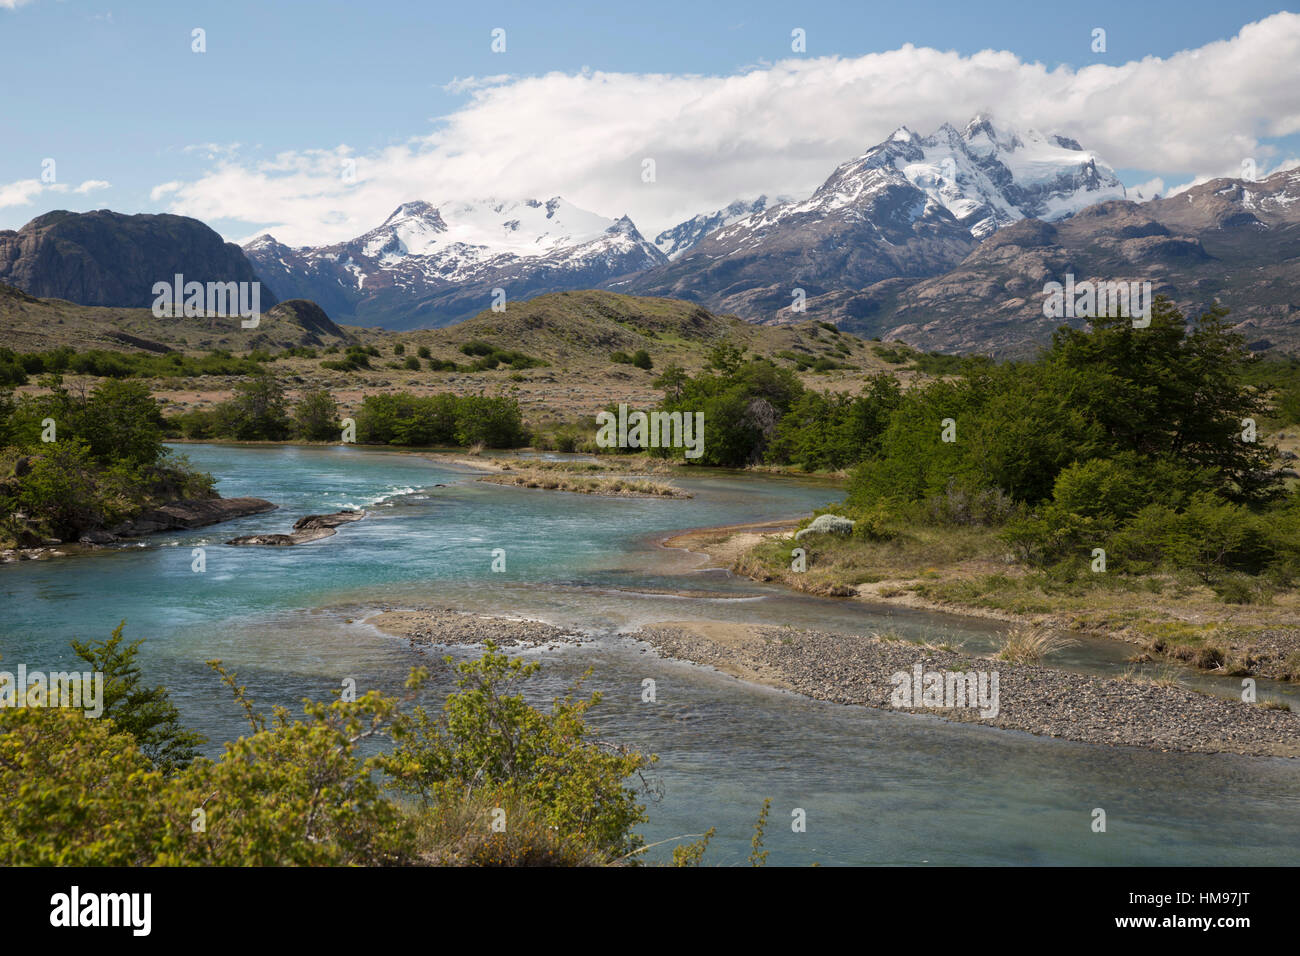 Gletscherfluss am Lago Argentino, El Calafate, Parque Nacional Los Glaciares, Estancia Cristina, Patagonien, Argentinien Stockfoto